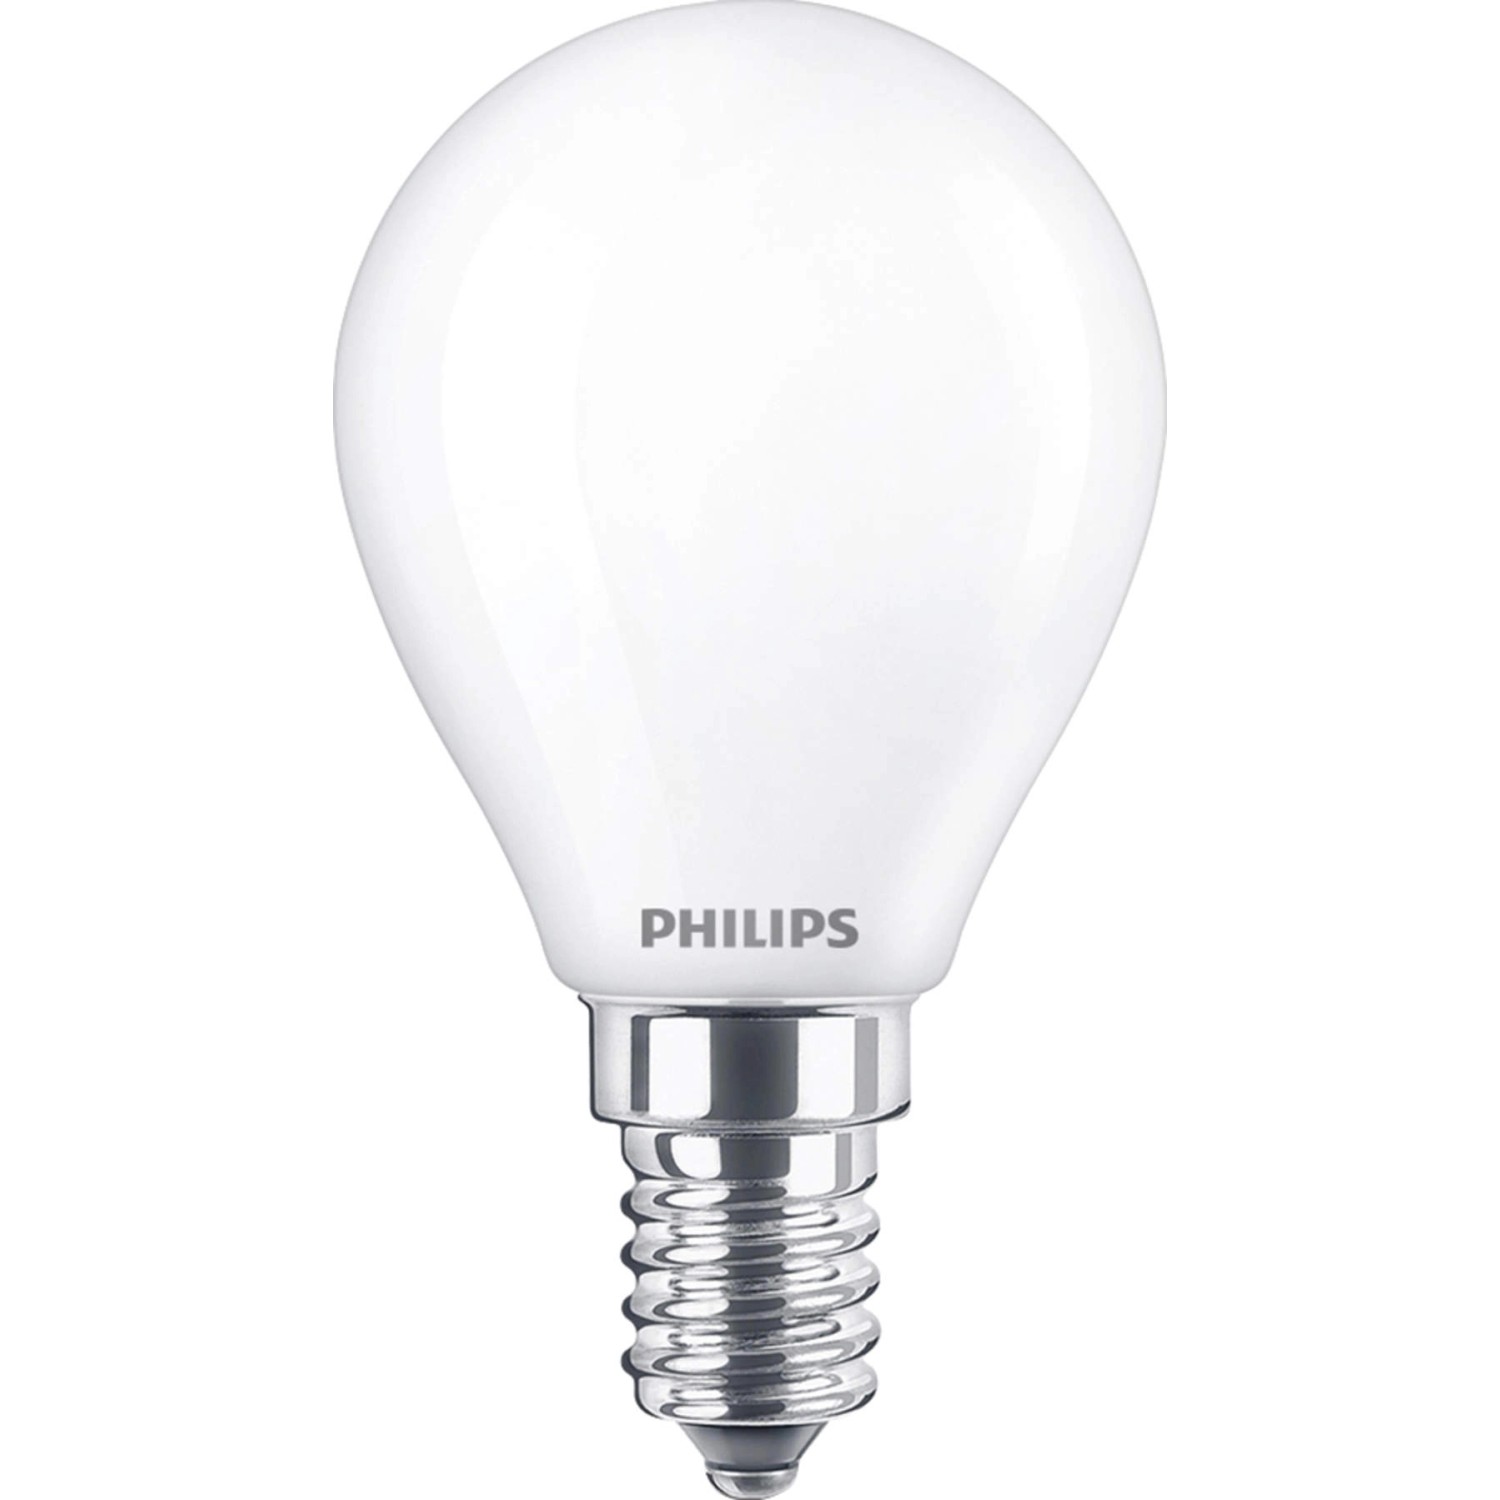 Philips LED-Leuchtmittel E14 Tropfenform 6,5 W 806 lm 8 x 4,5 cm (H x Ø)